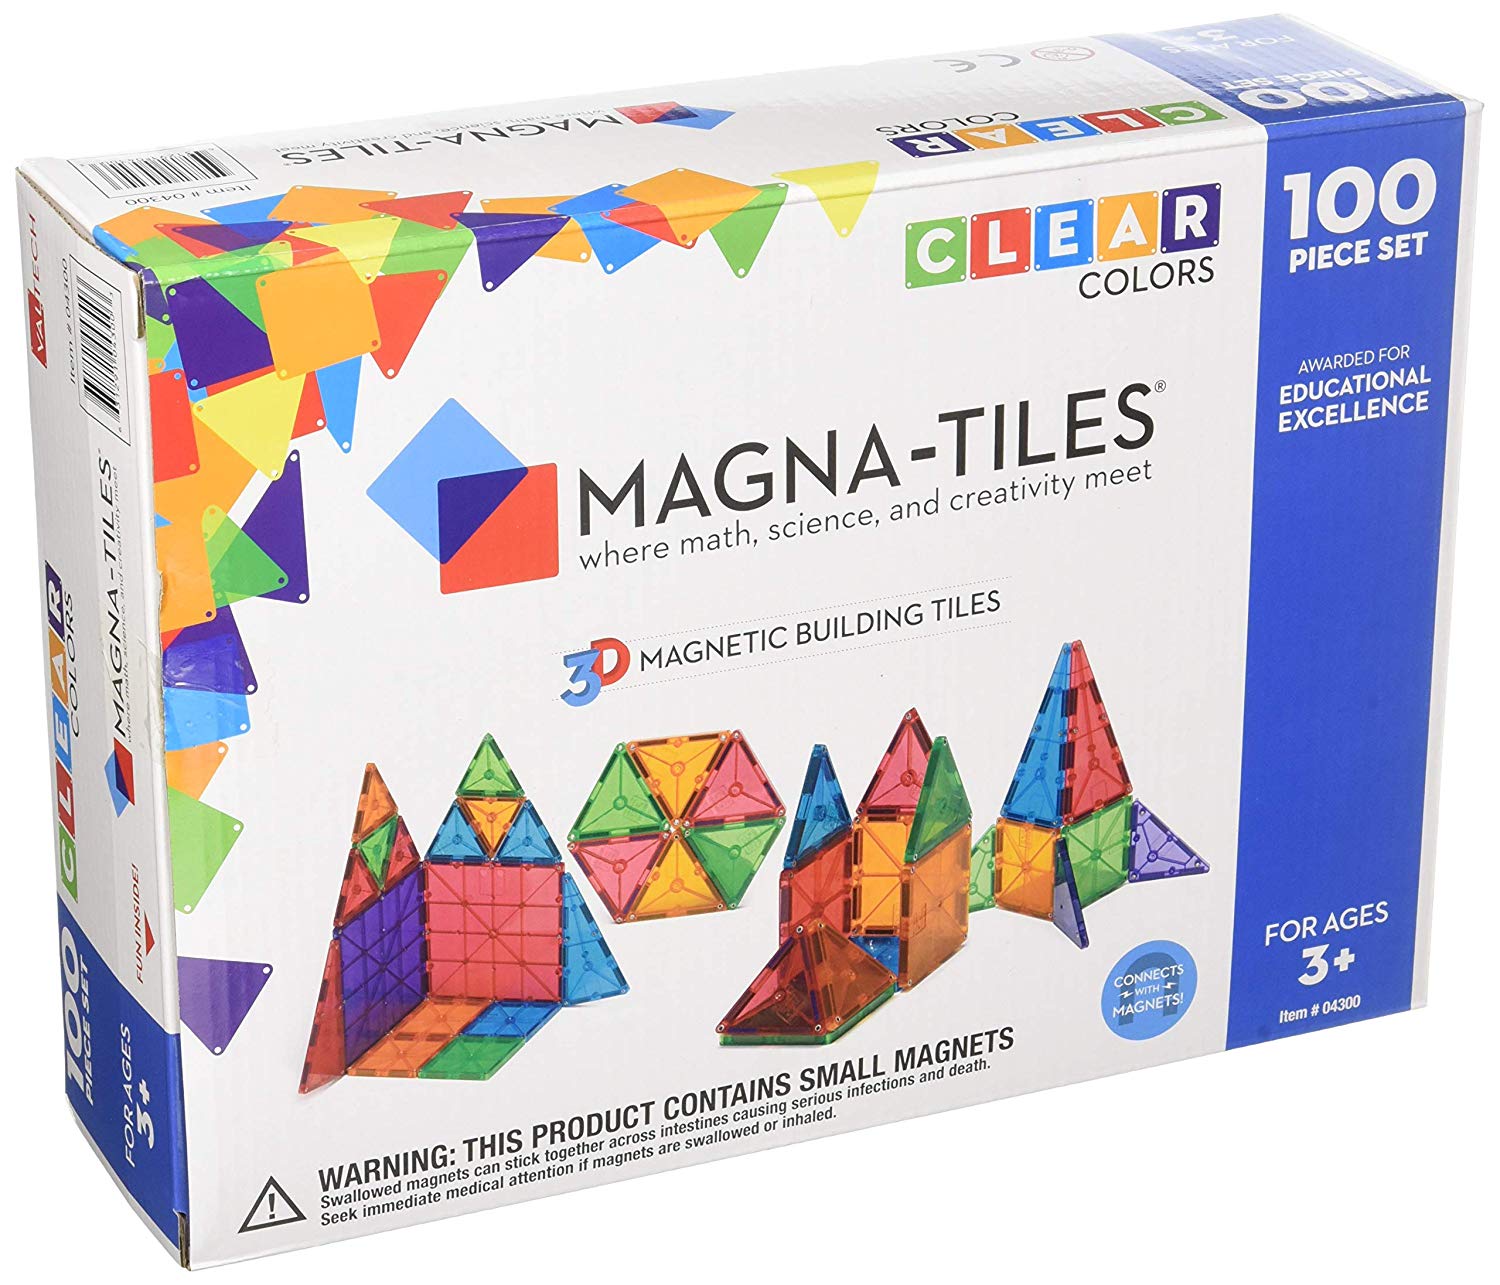 Magna-Tiles 100-Piece Clear Colors Set 